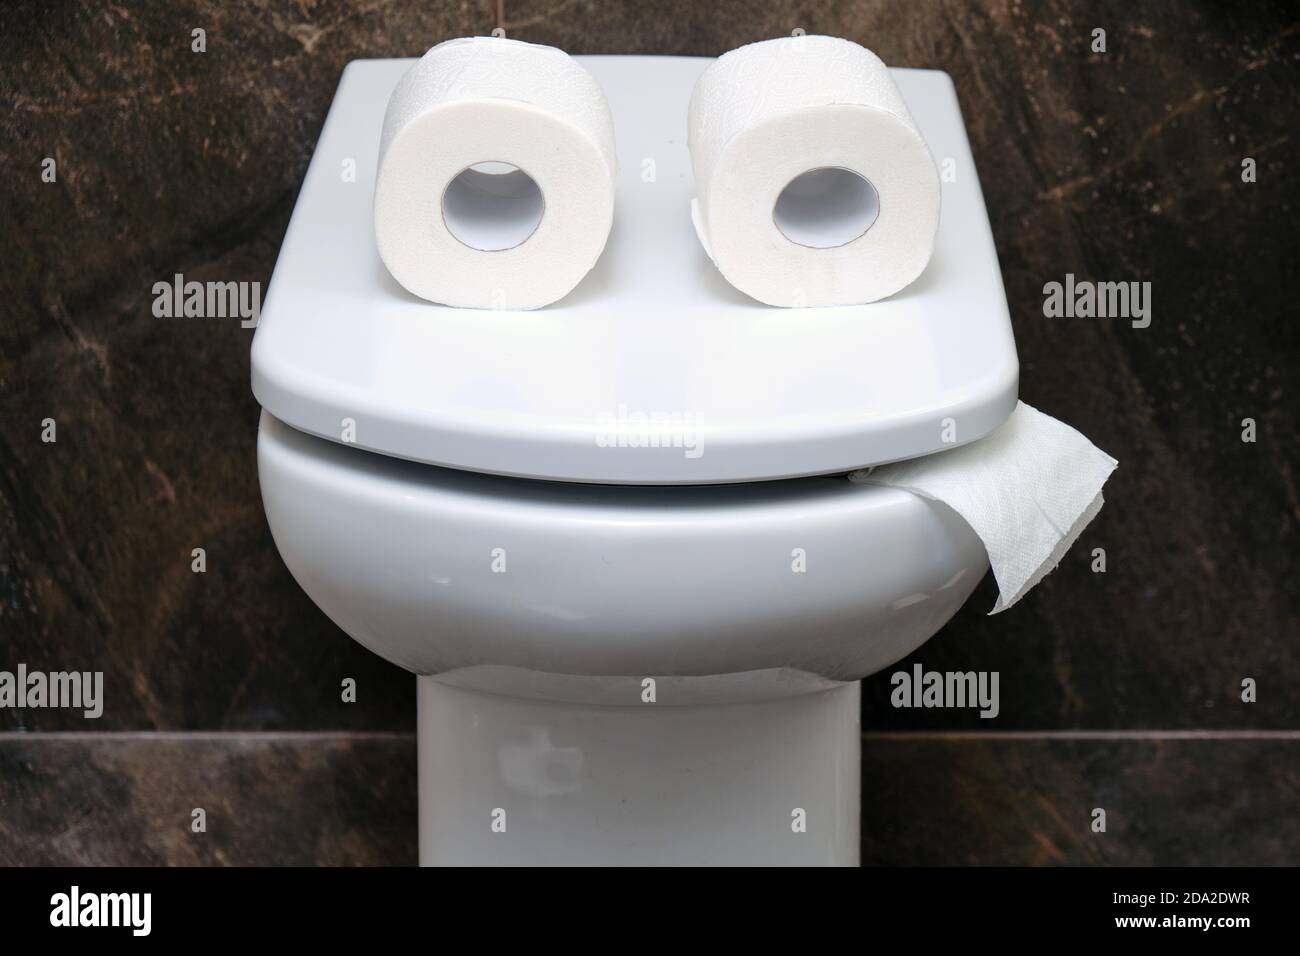 Toilettenschüssel mit zwei Rollen Papier ähnlich wie Augen oder Gläser. Komisches Konzept, dass das Toilettenpapier ausläuft Stockfoto